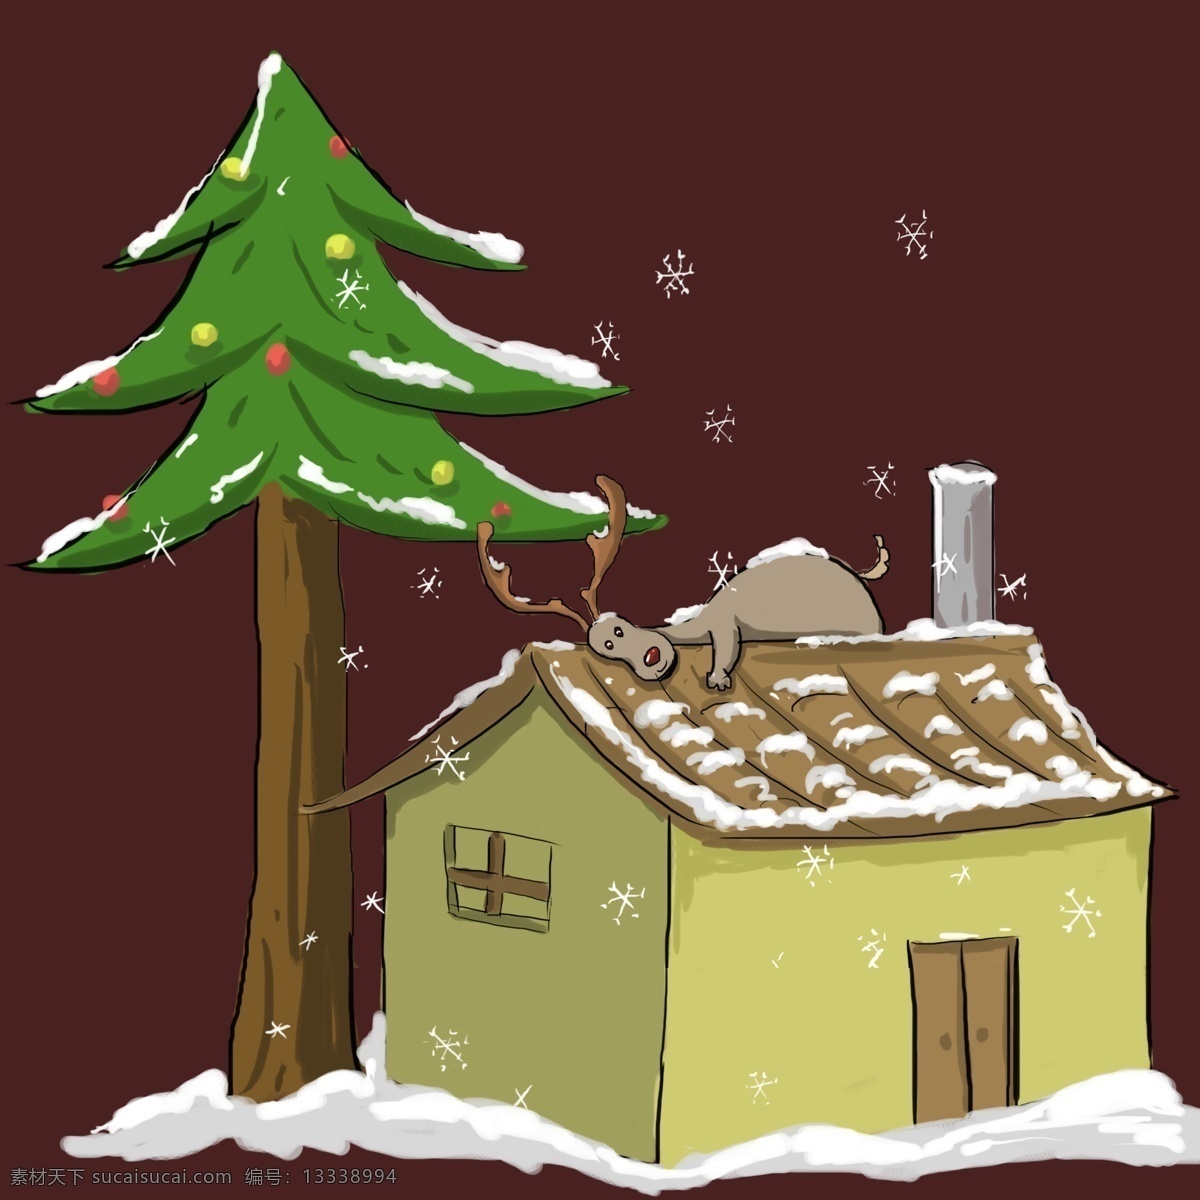 圣诞节 麋鹿 雪景 场景 元素 房子 雪地 圣诞树 雪花